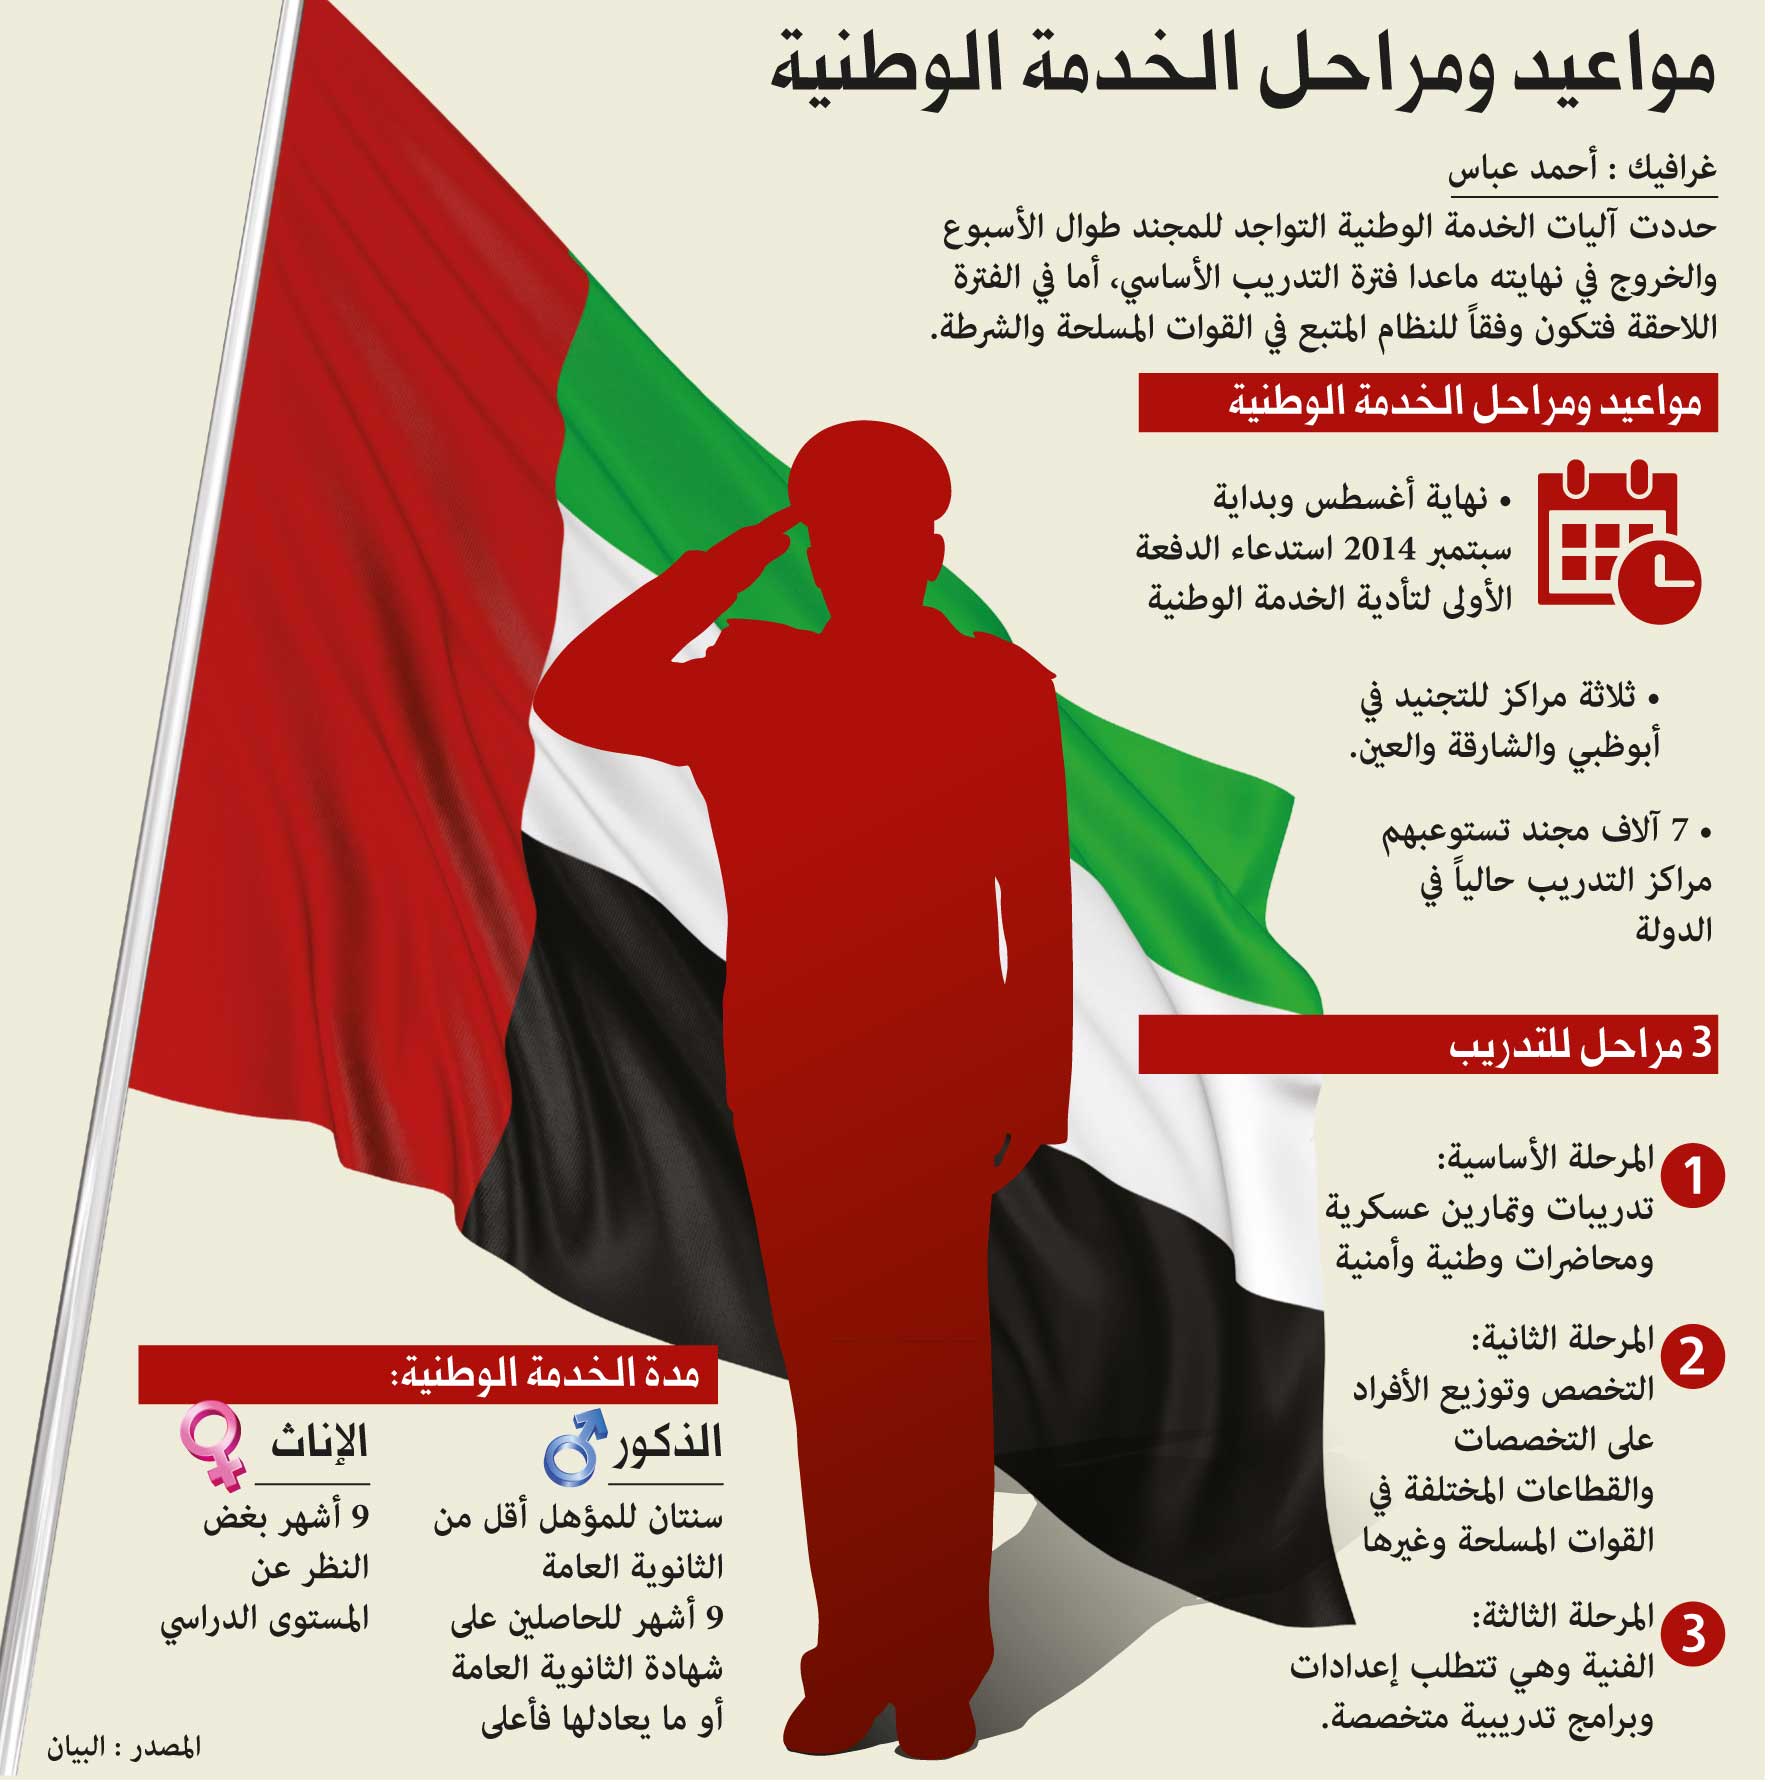 زيادة مدة الخدمة الوطنية في الامارات | الصفحة 3 | Arab Defense المنتدى  العربي للدفاع والتسليح